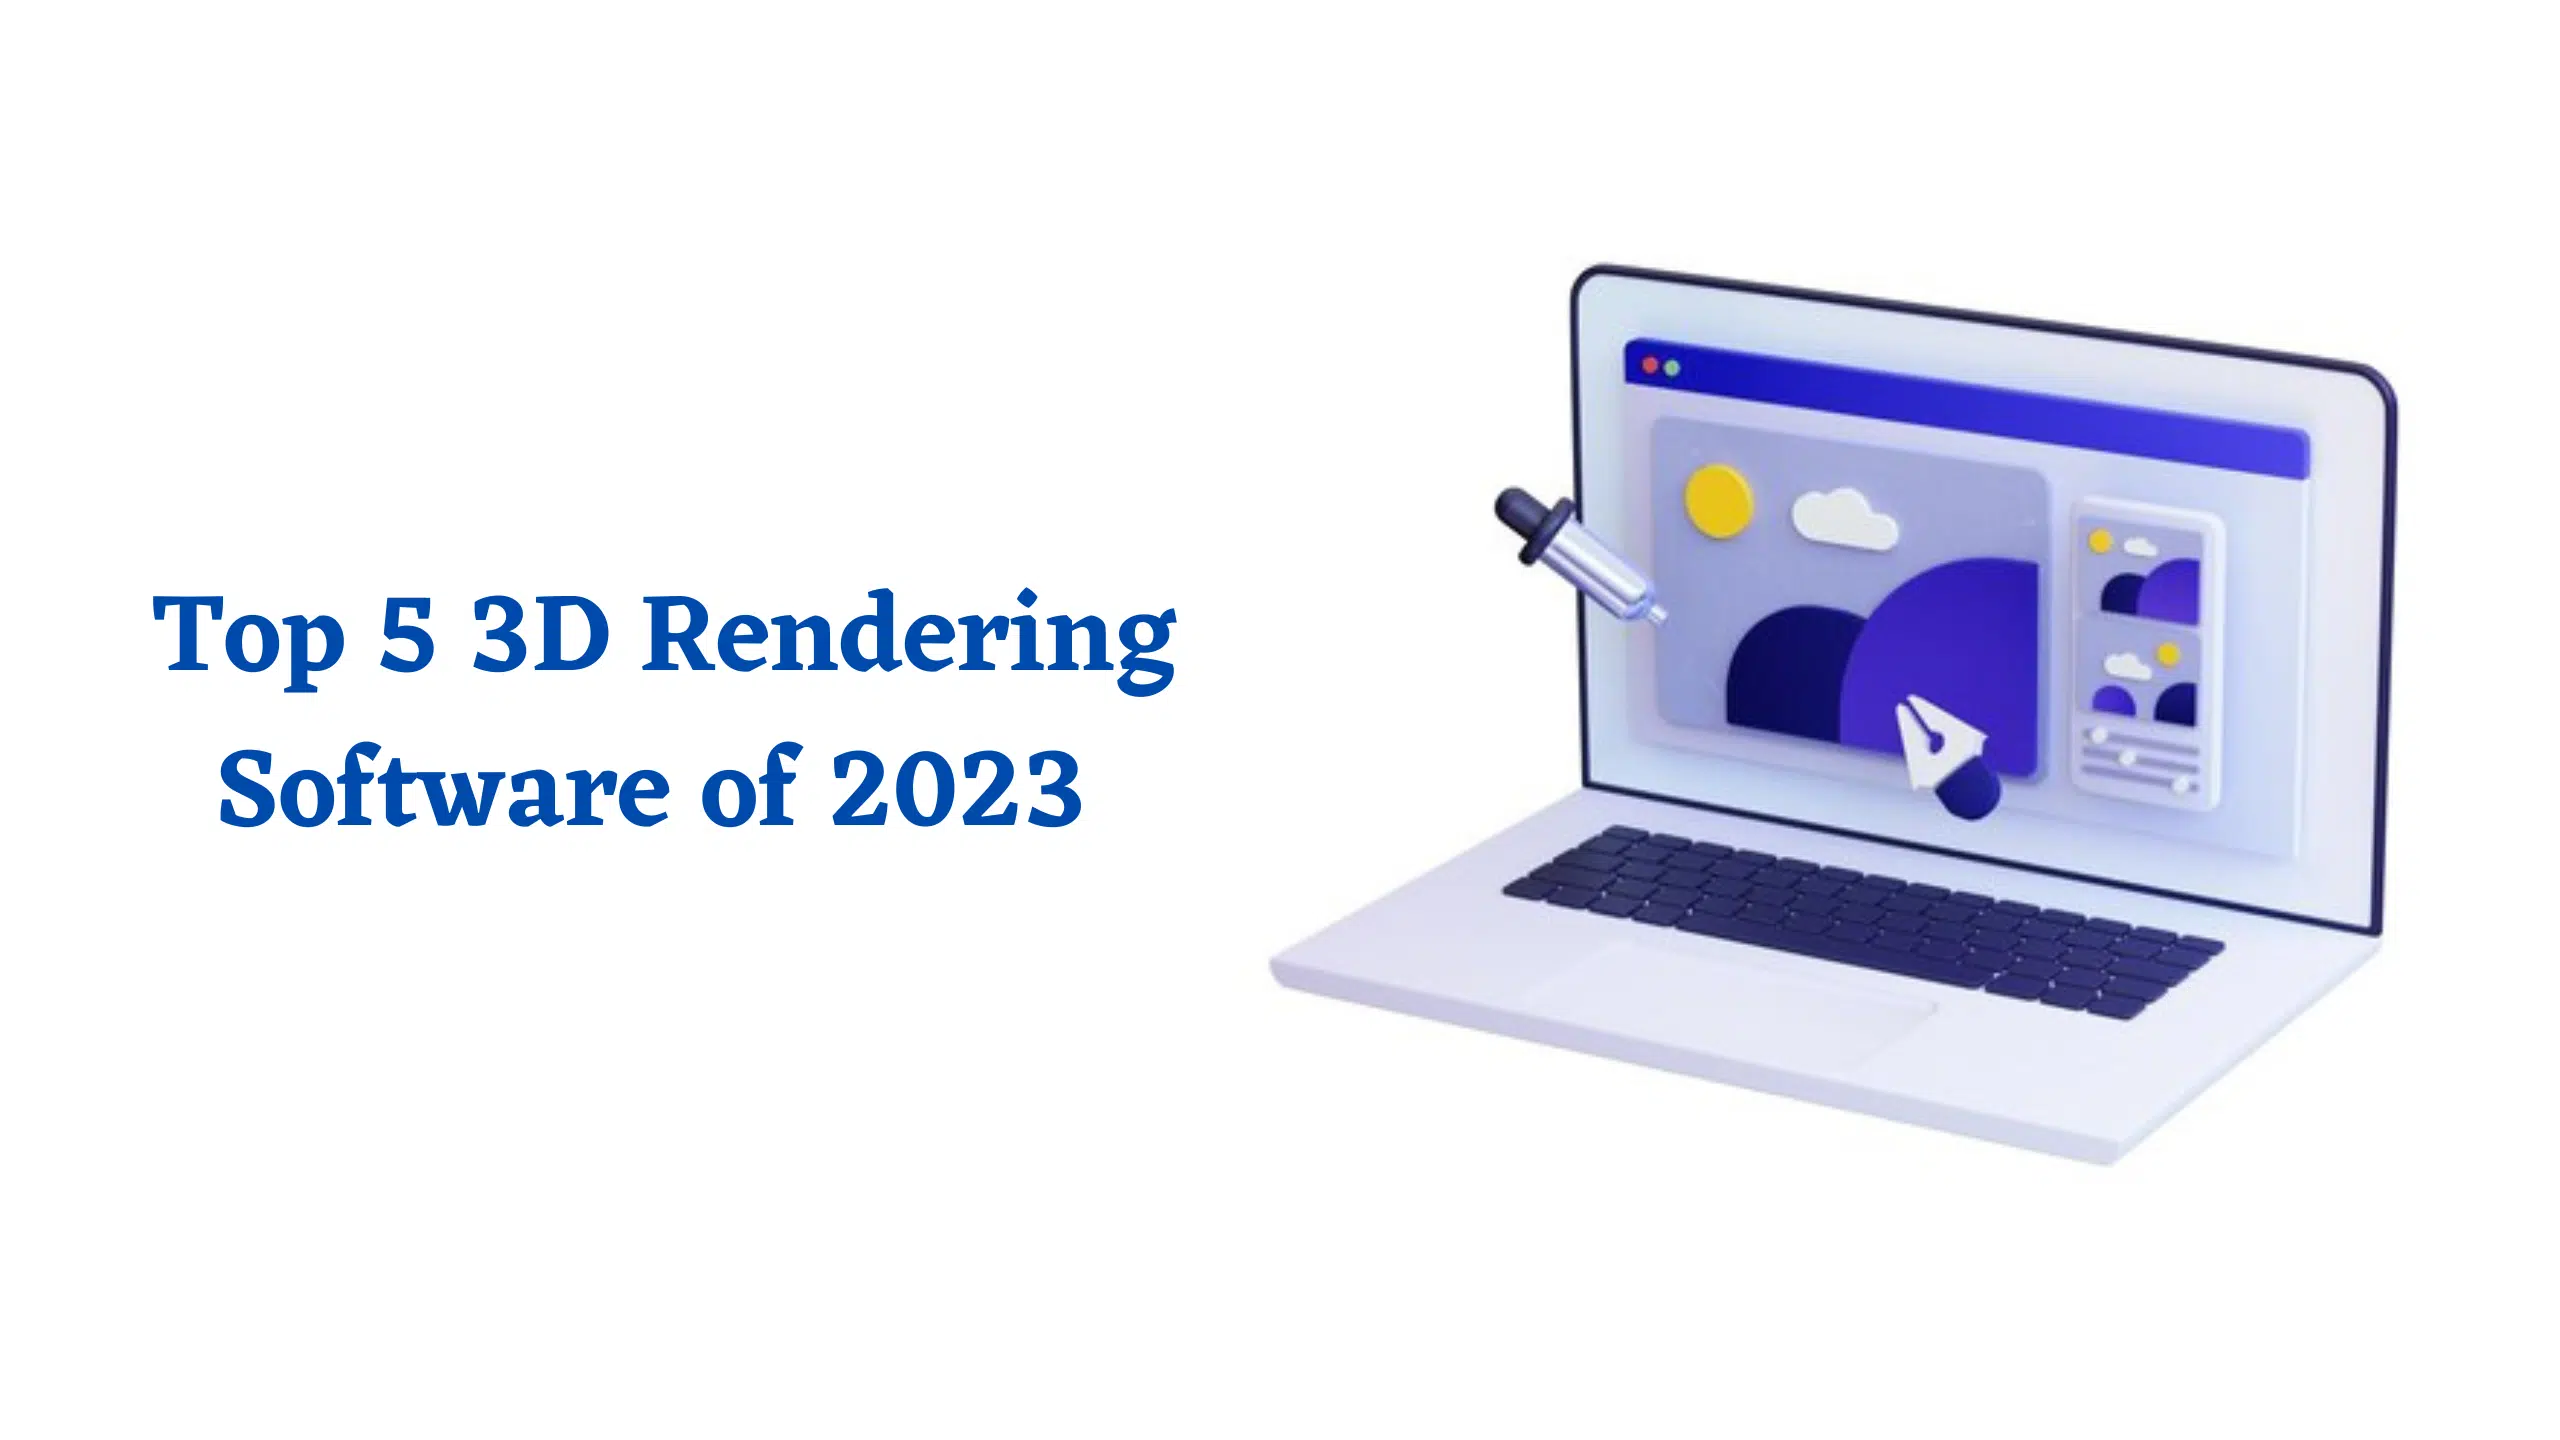 Top 5 3D Rendering Software